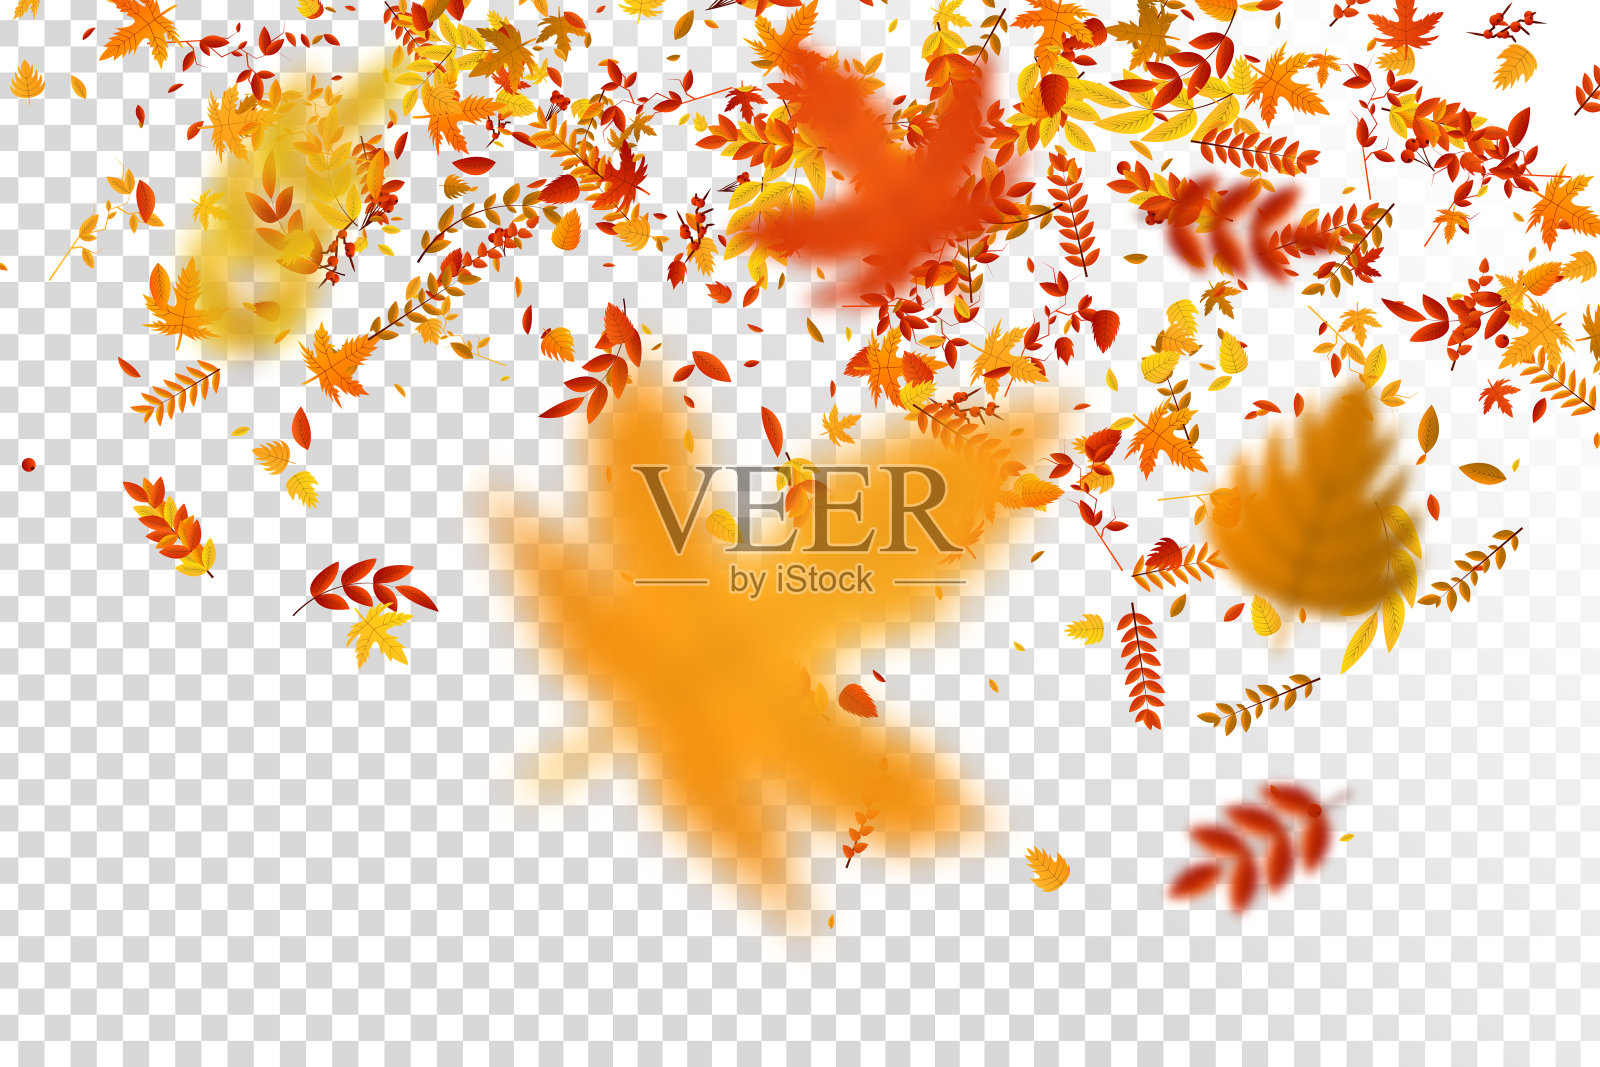 矢量现实孤立的红色，黄色和橙色枫树和橡树落叶五彩纸屑装饰和覆盖在透明的背景。快乐秋天的概念。设计元素图片